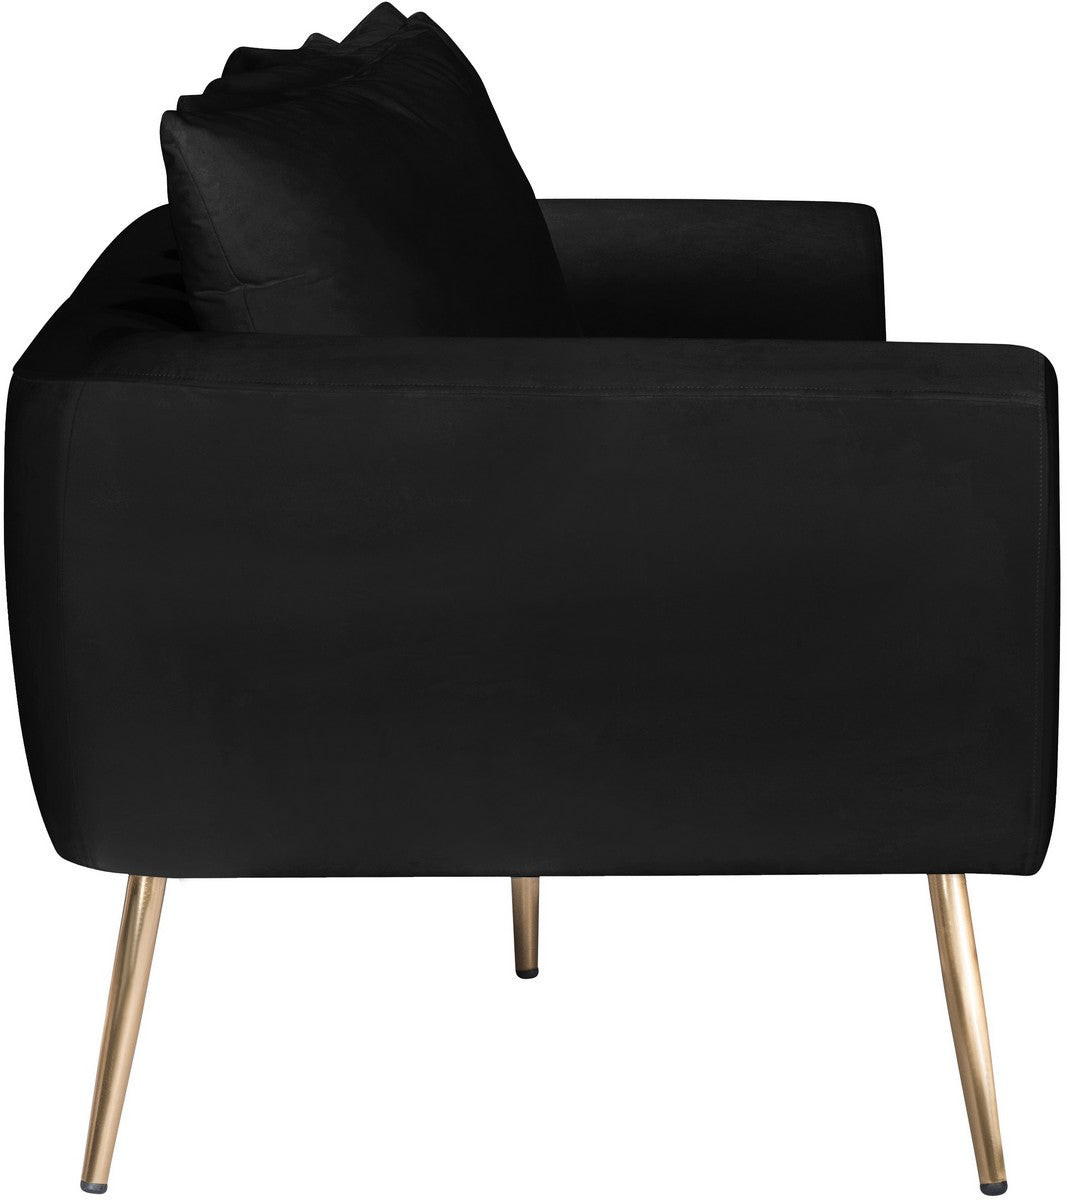 Meridian Furniture Quinn Black Velvet Sofa